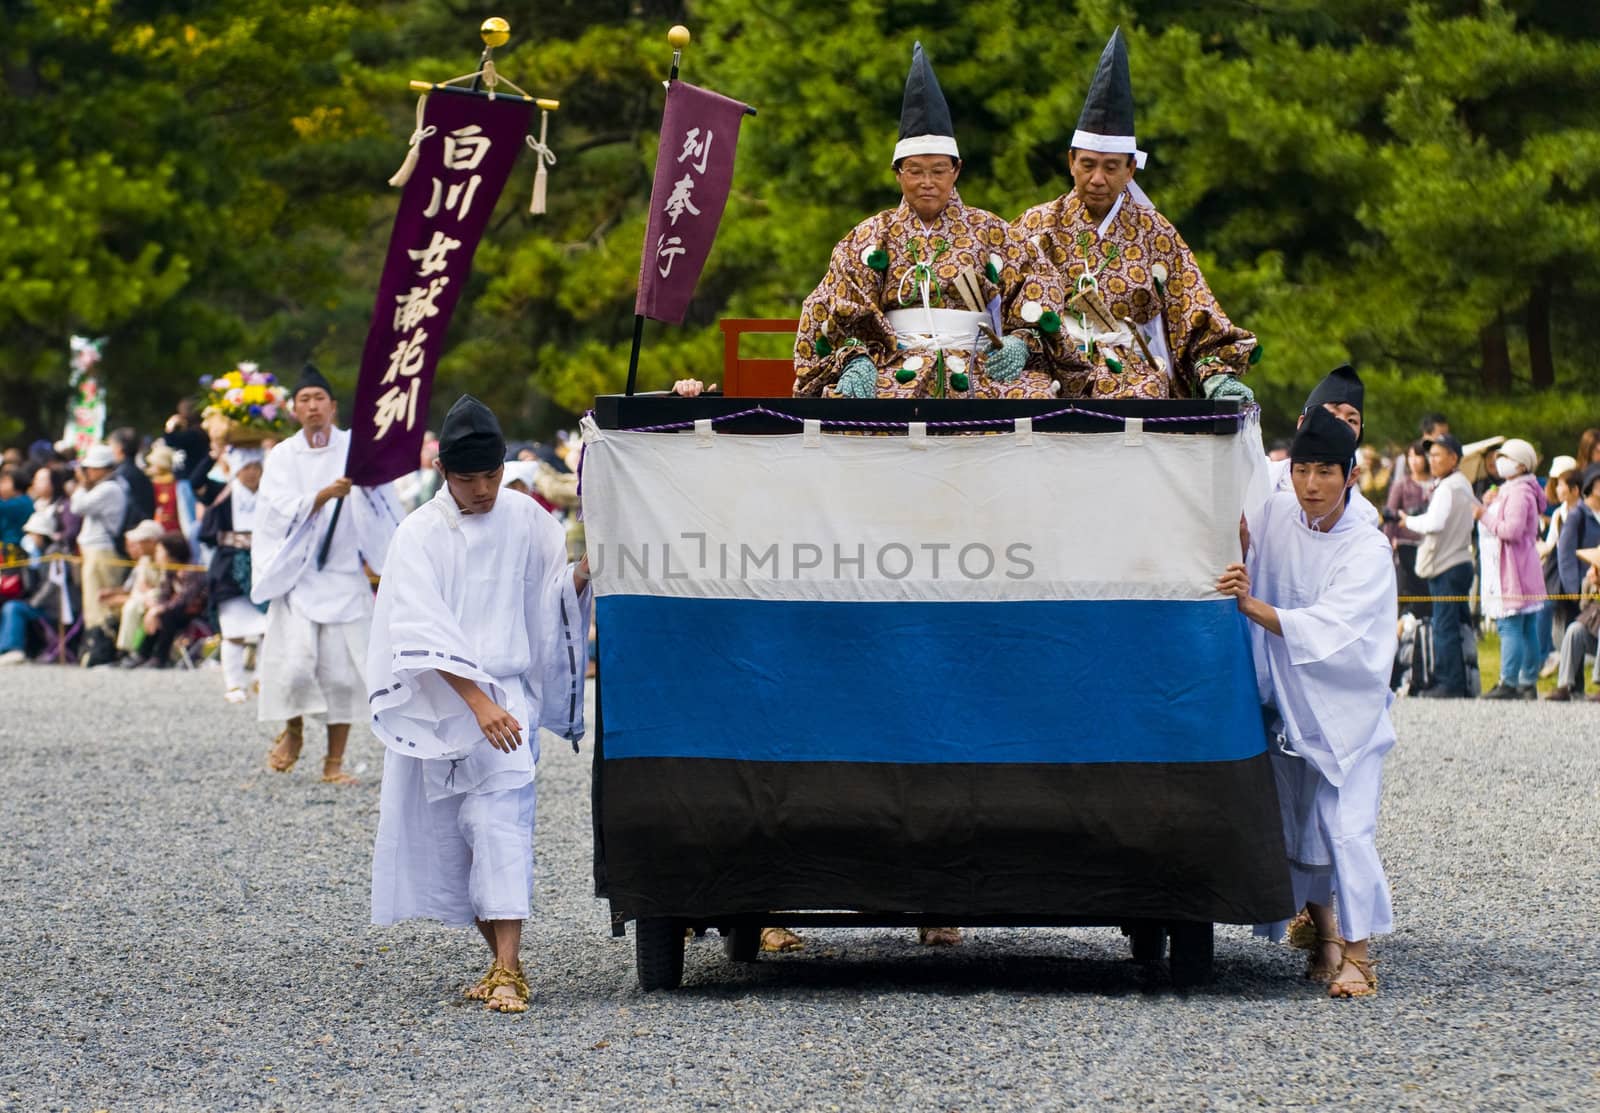 Jidai Matsuri  festival  by kobby_dagan